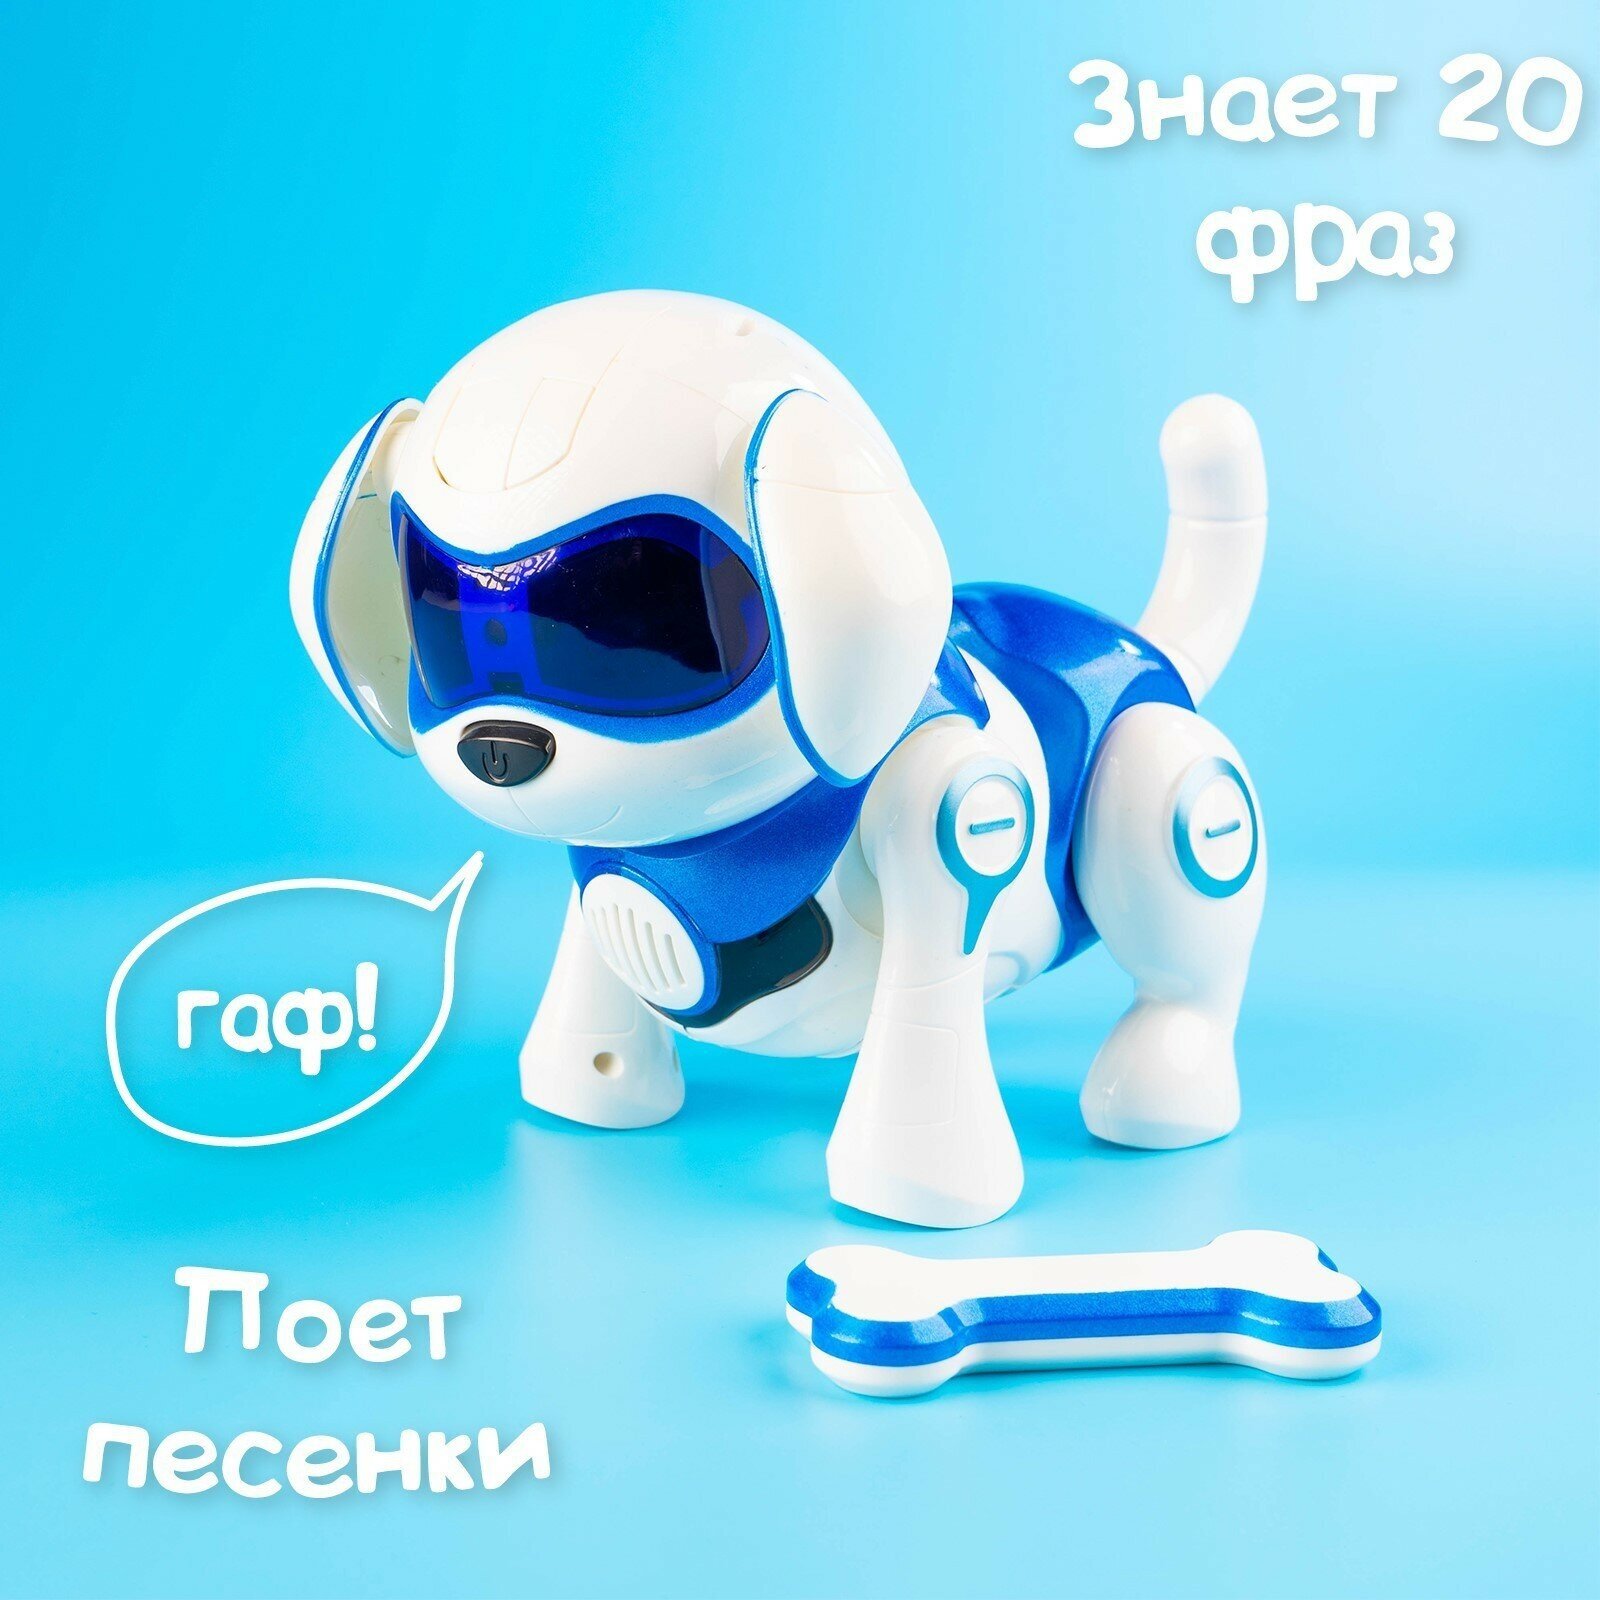 Собака-робот интерактивная «Чаппи», русское озвучивание, световые и звуковые эффекты